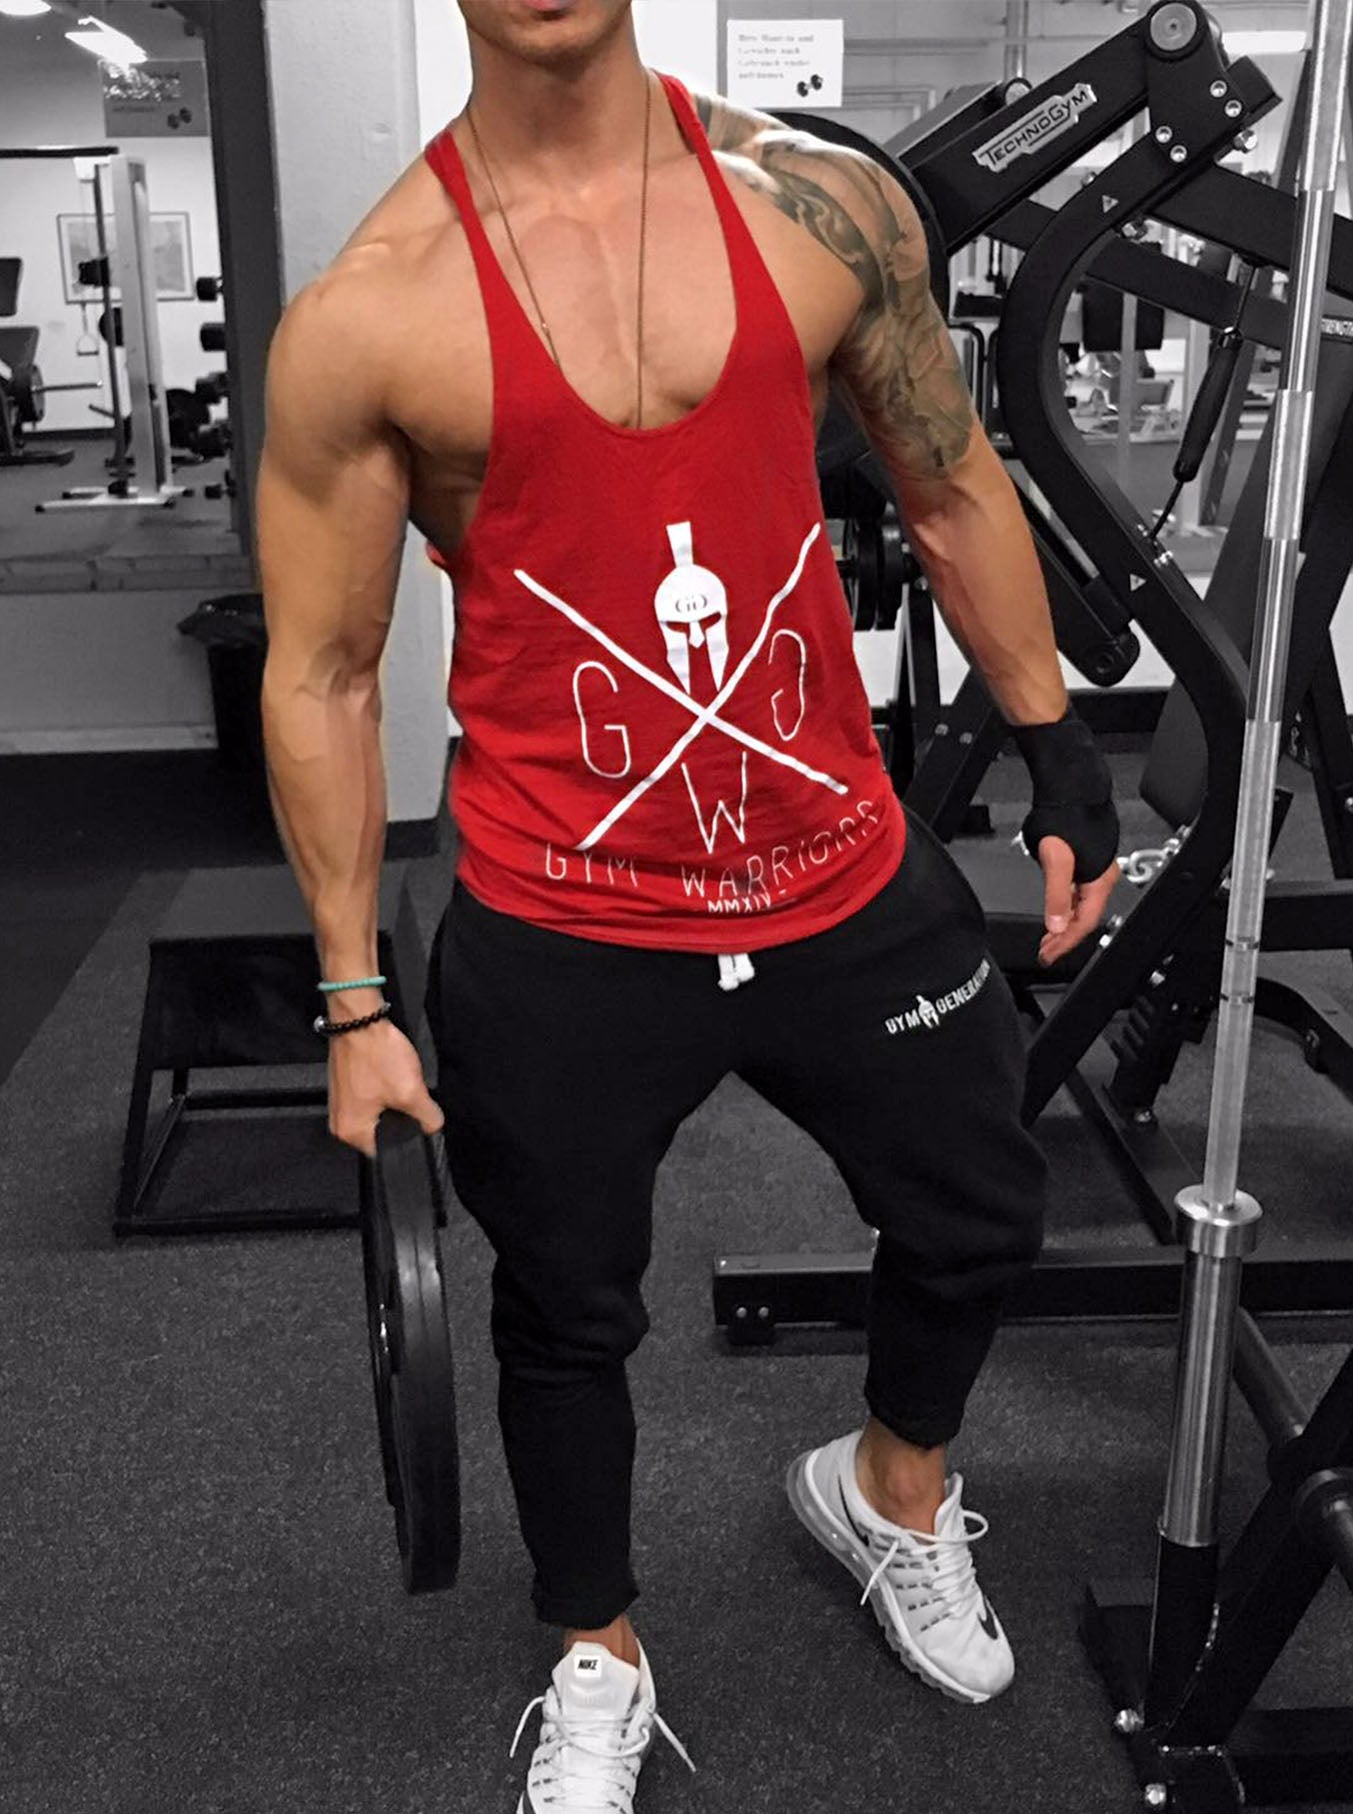 Stylisches rotes Stringer Tank Top für Herren mit auffälligem weißen Gym Warriors Logo – Perfekt für das Fitnessstudio